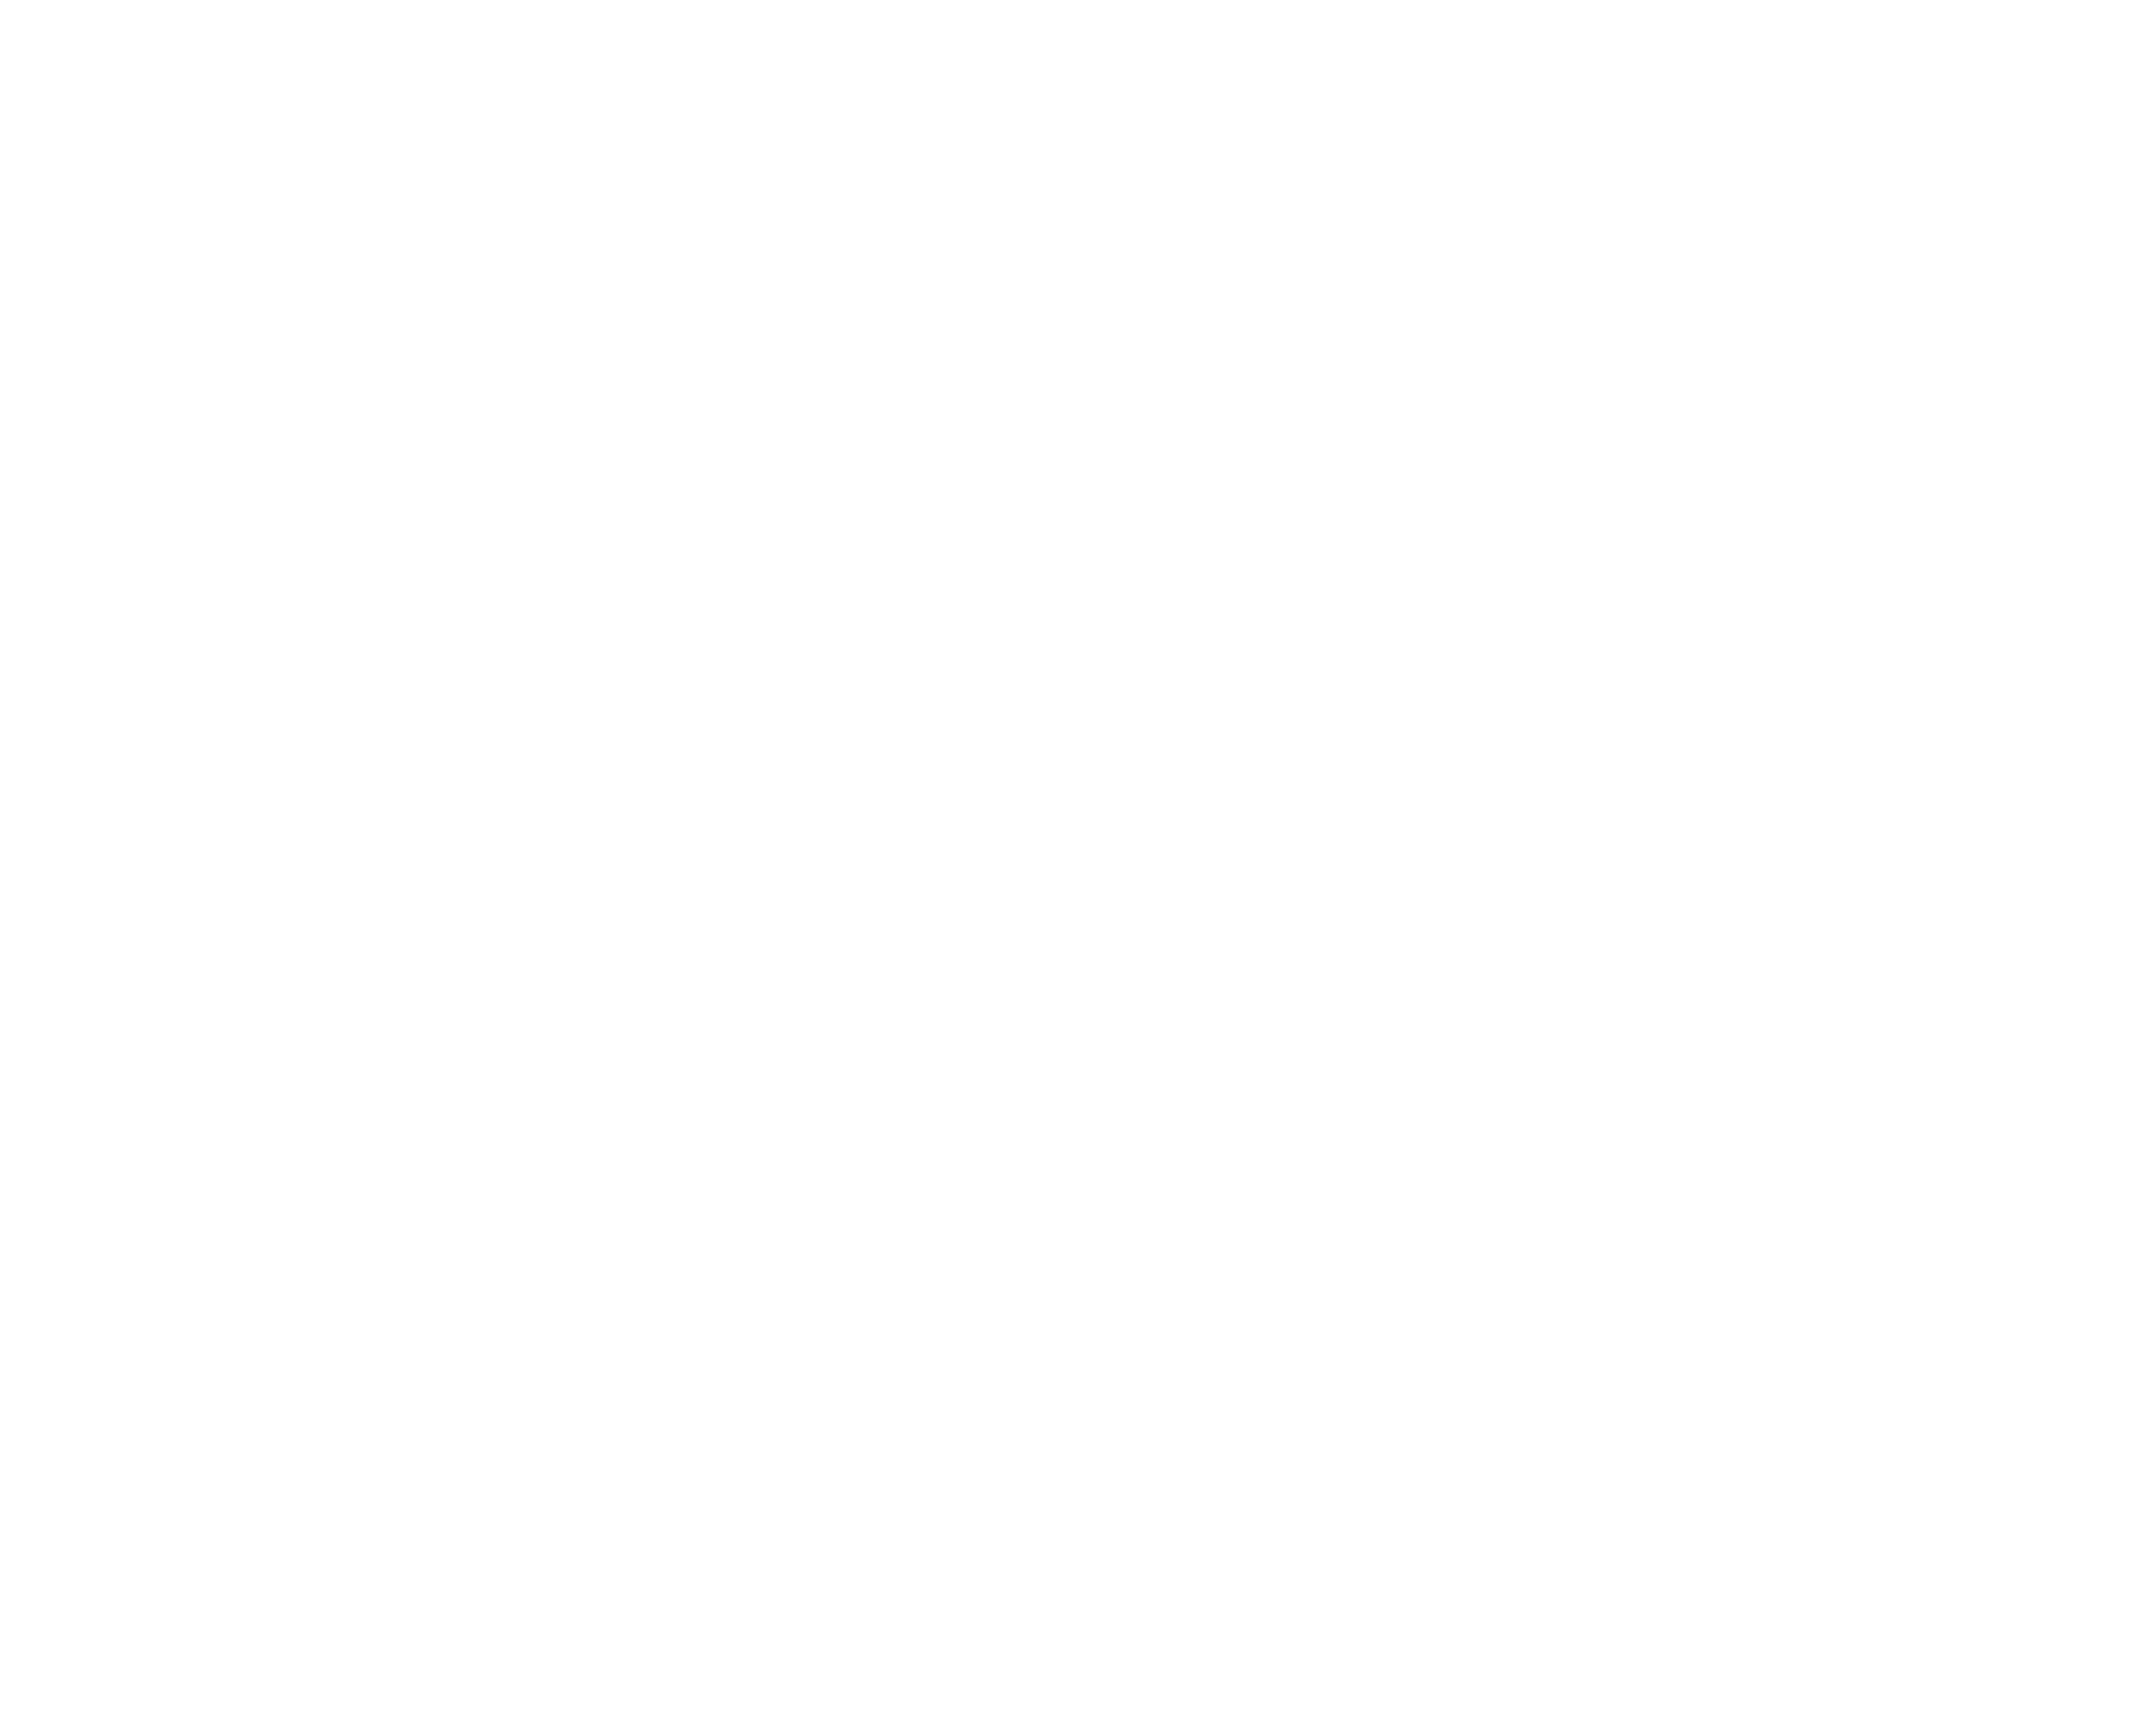 Groark Boys BBQ - Matt Groark - Next Level Chef